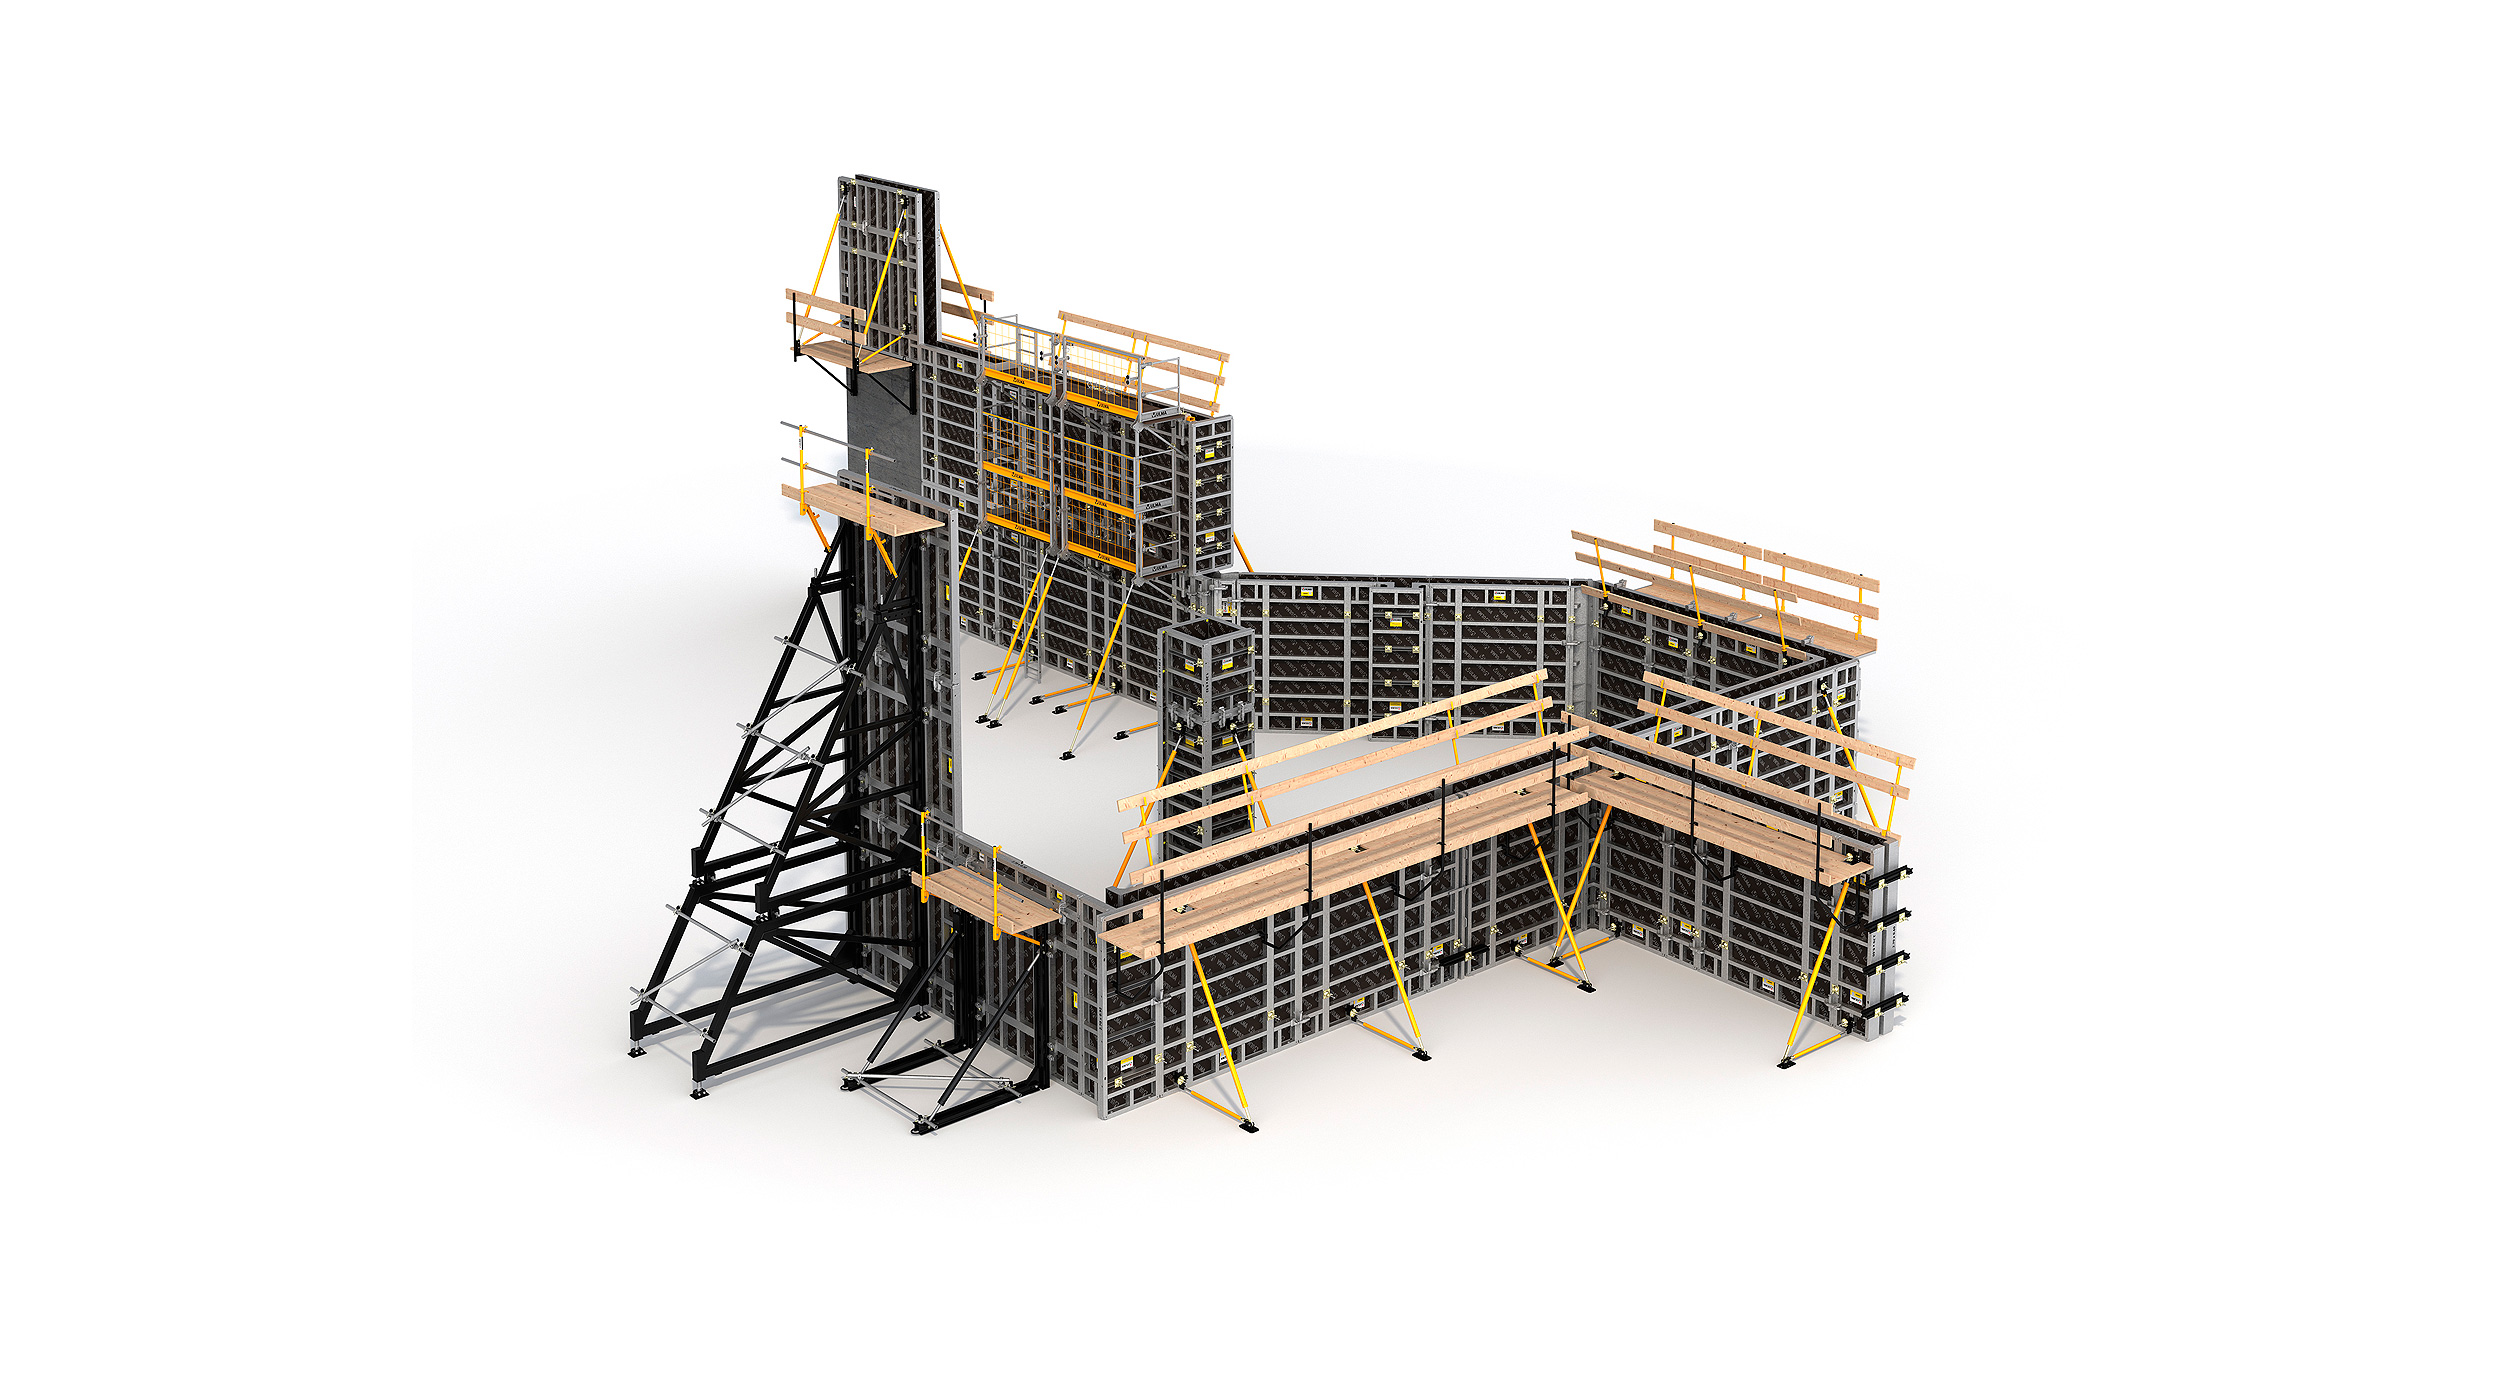 Sistema de encofrado modular para la construcción de todo tipo de estructuras verticales de hormigón. Destaca su alto rendimiento con el mínimo coste en mano de obra.